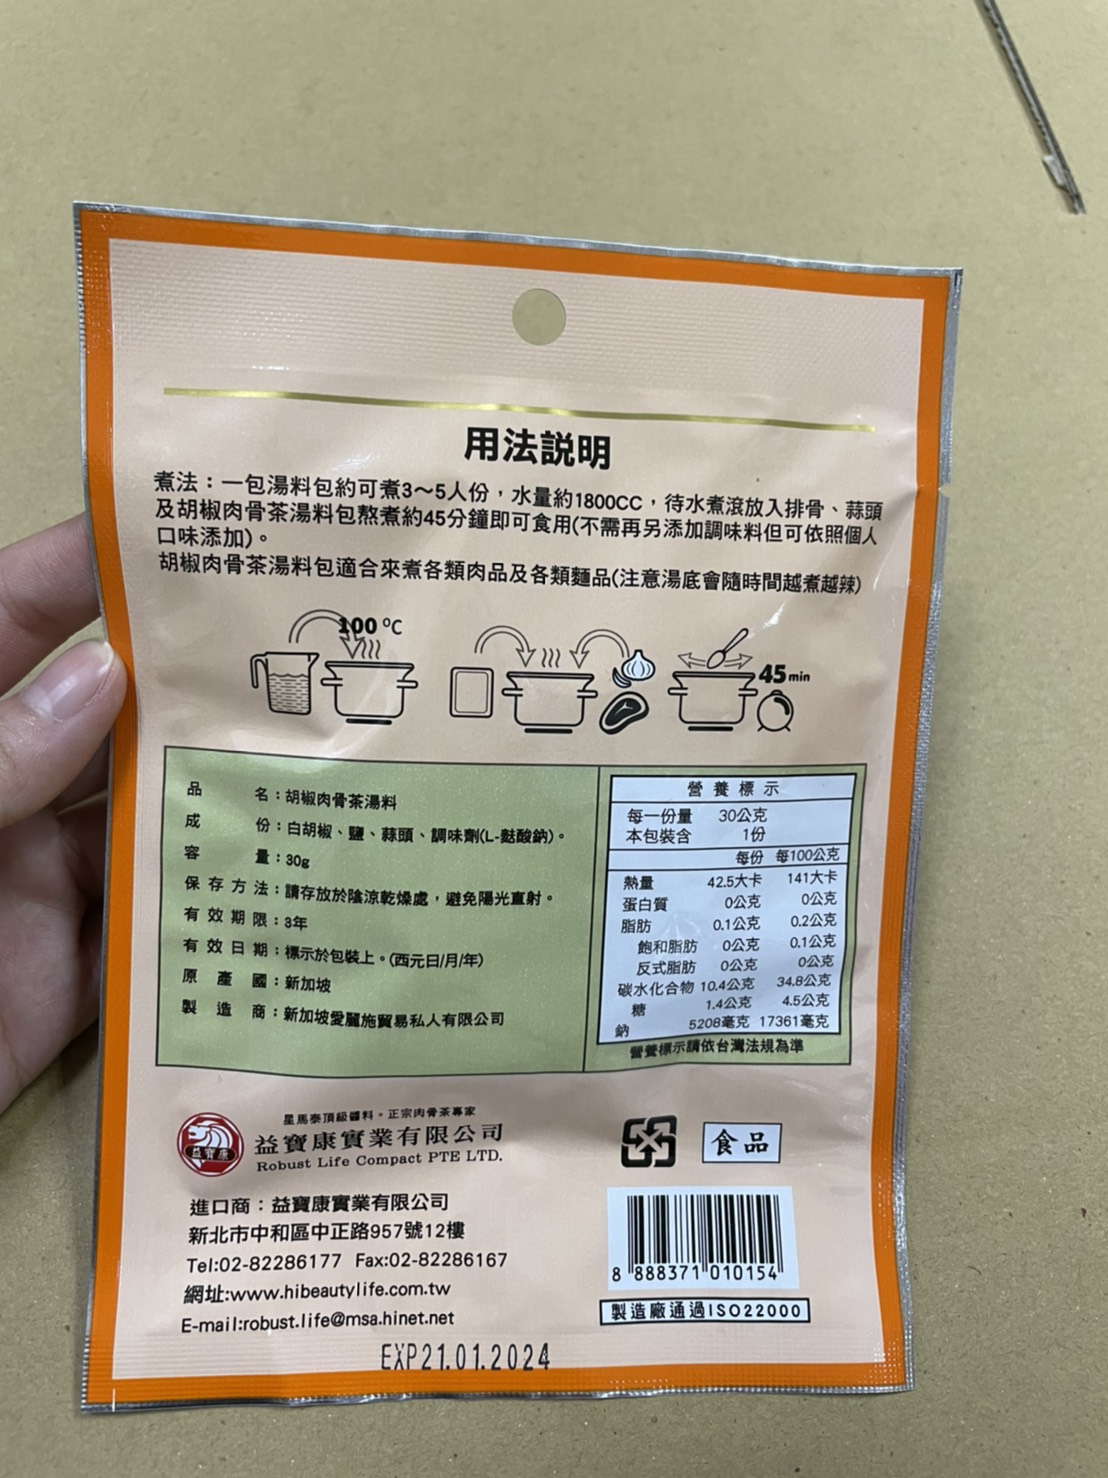 【愛麗施】獅城胡椒肉骨茶湯料(30g) 無藥味肉骨茶湯/煲湯料